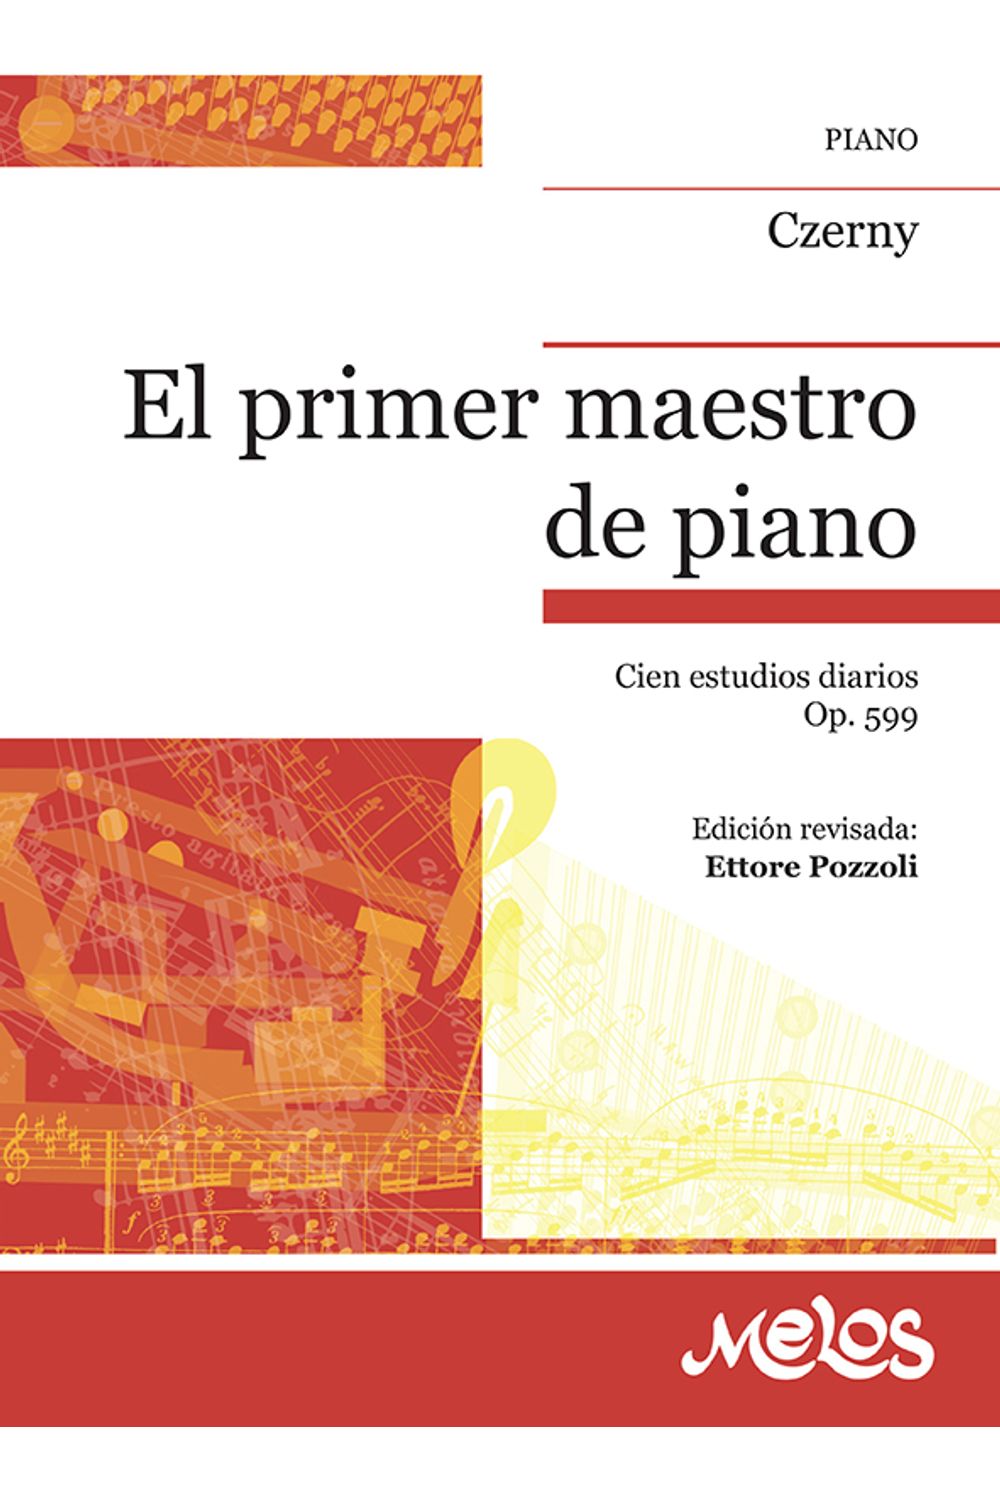 bm-era229-el-primer-maestro-de-piano-melos-ediciones-musicales-9789876111195